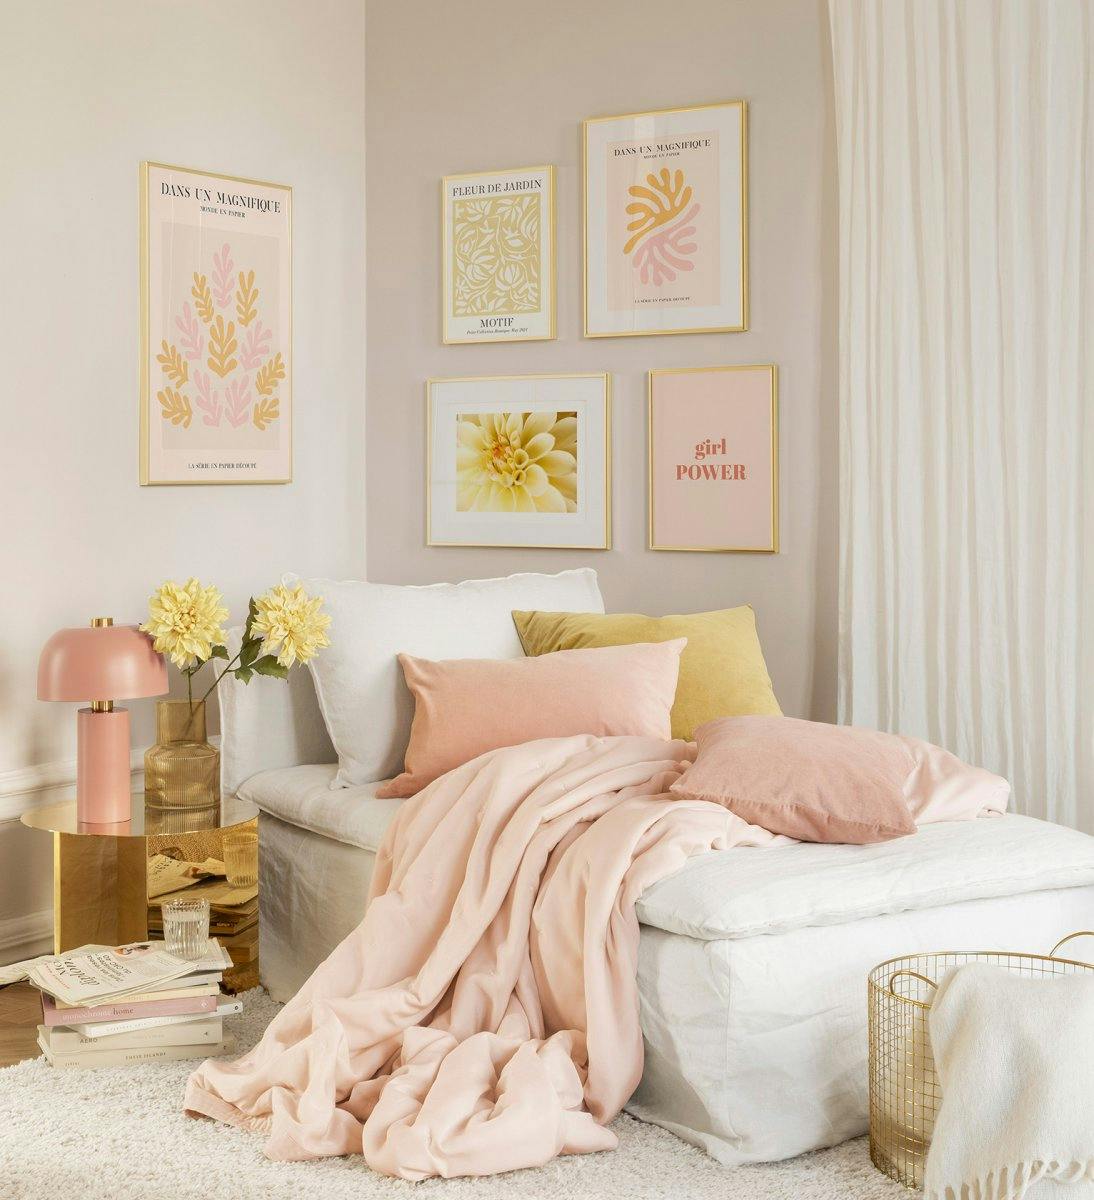 Décoration murale tendance avec des affiches roses et oranges dans des cadres dorés pour la chambre